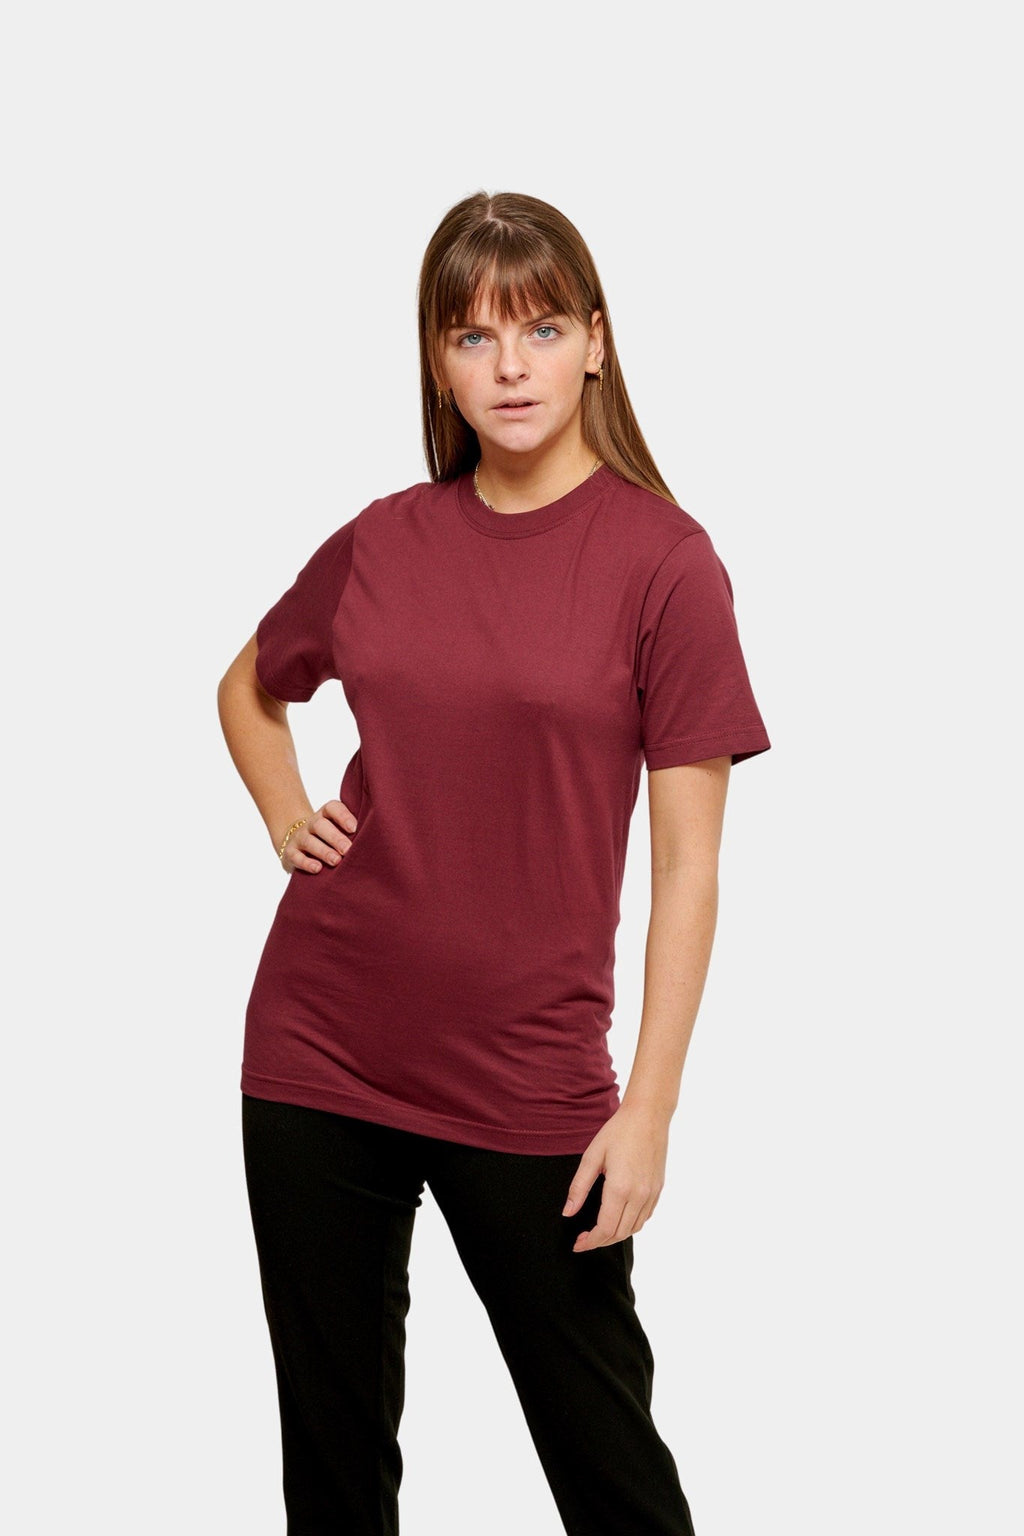 T-shirt surdimensionné - Forme de forfait pour femmes (6 pc.)